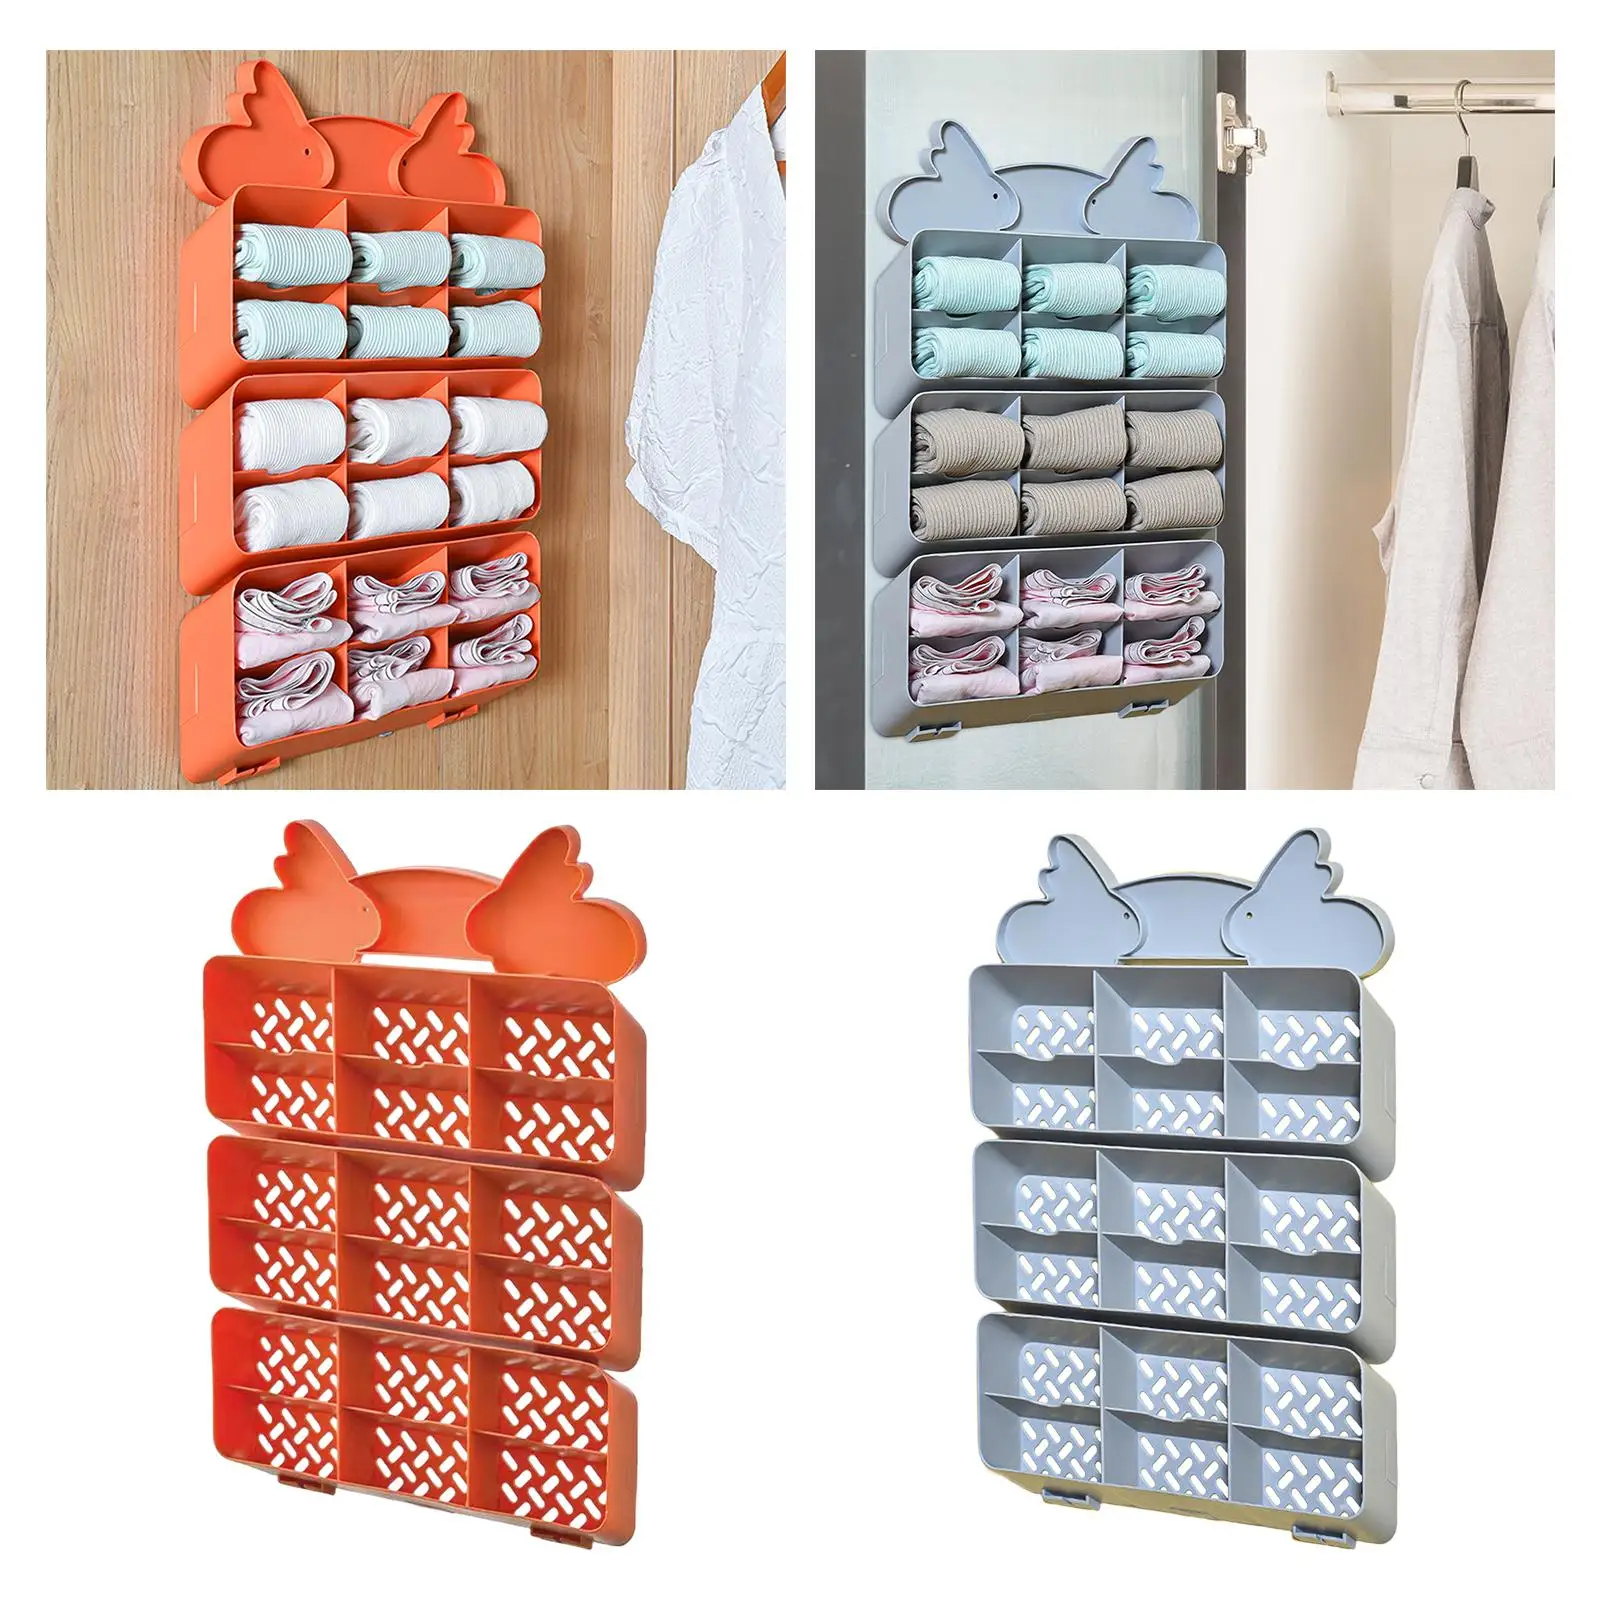 Socks Underwear Storage Hanging Wall or Door Hanging Storage Shelf for Storing Socks, Bra, Belts, Lingerie for Bathroom Dorm